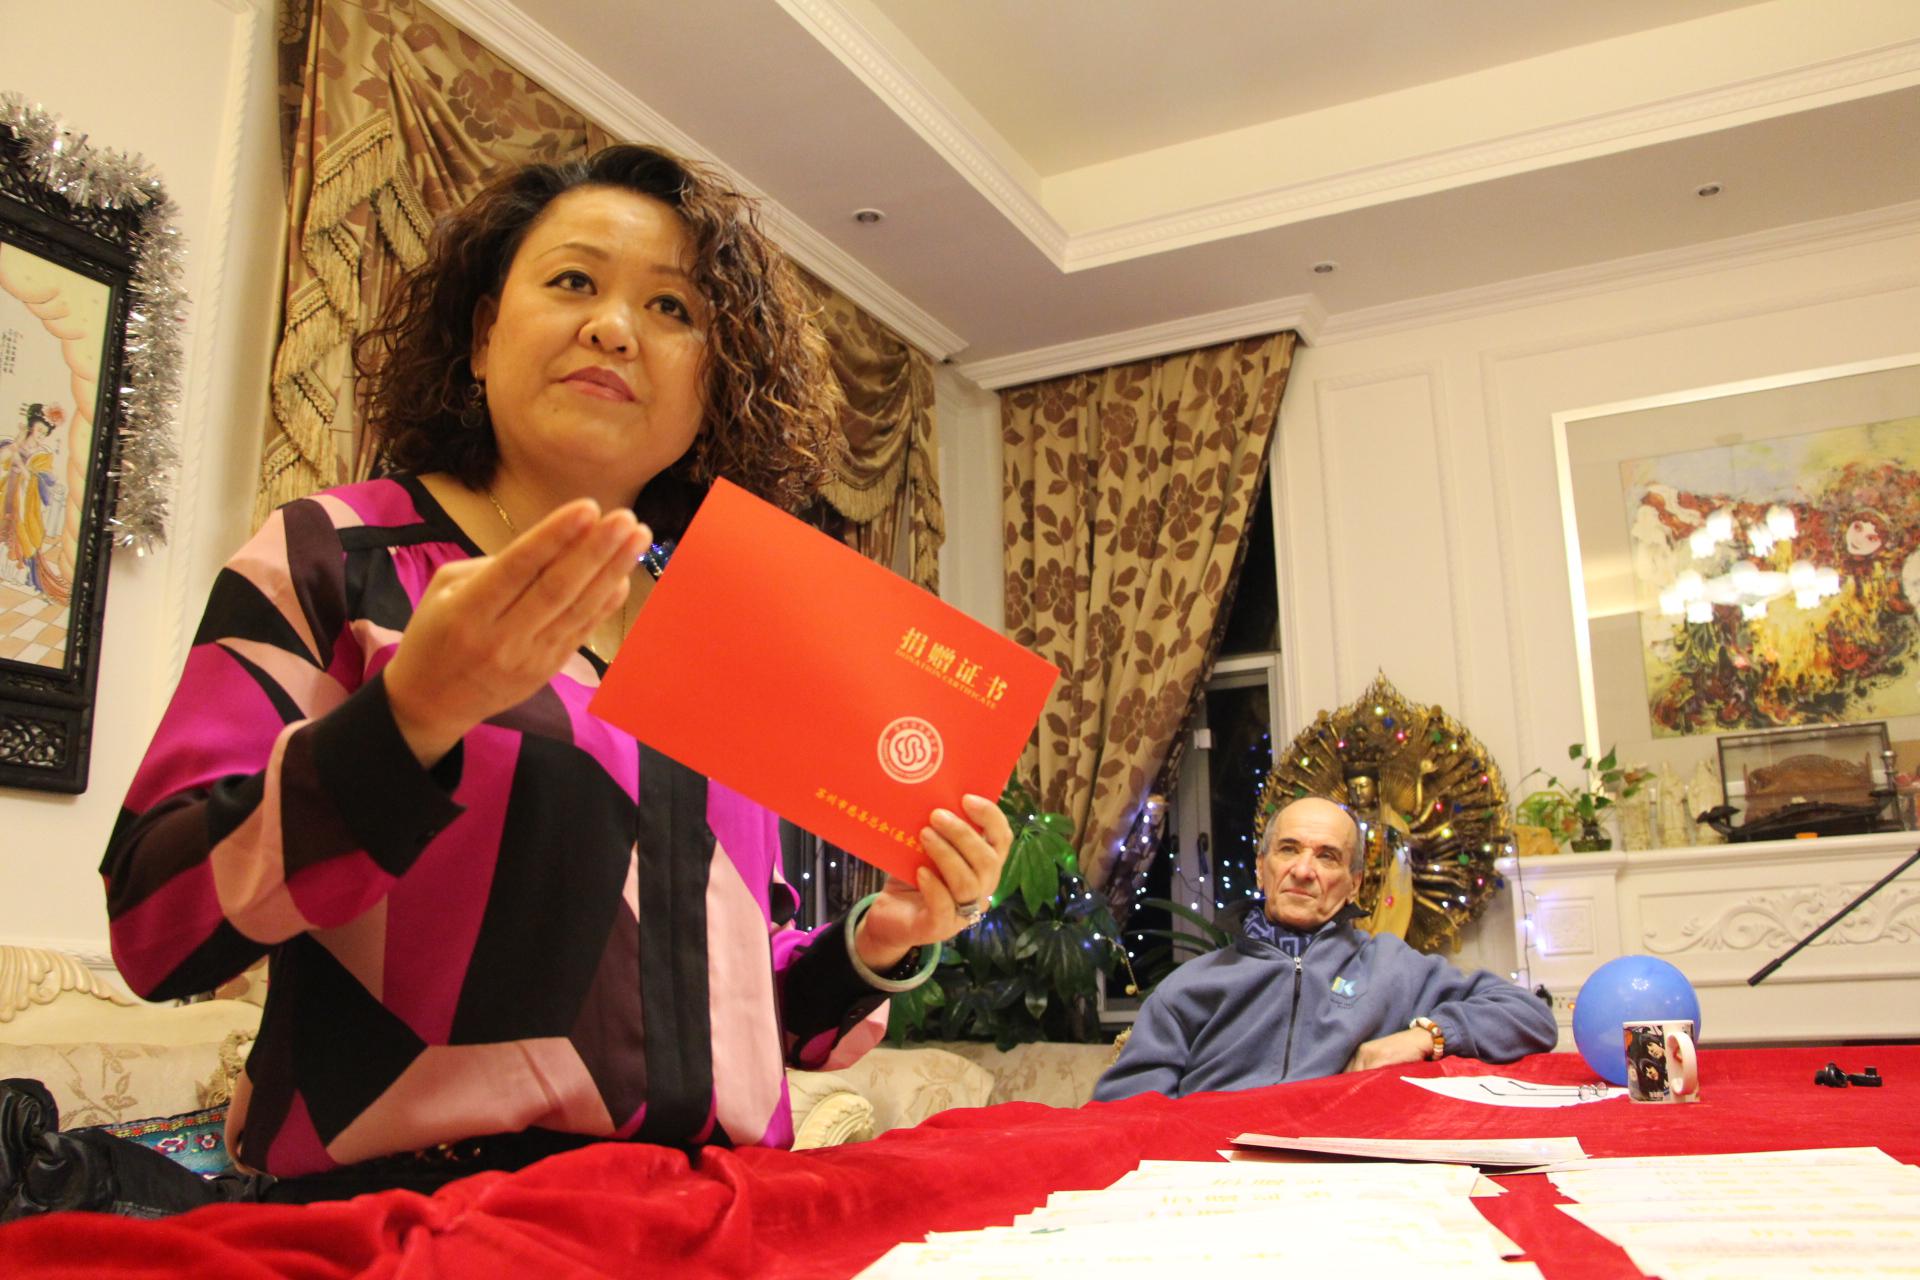 汤崇雁展示她的捐赠证书。